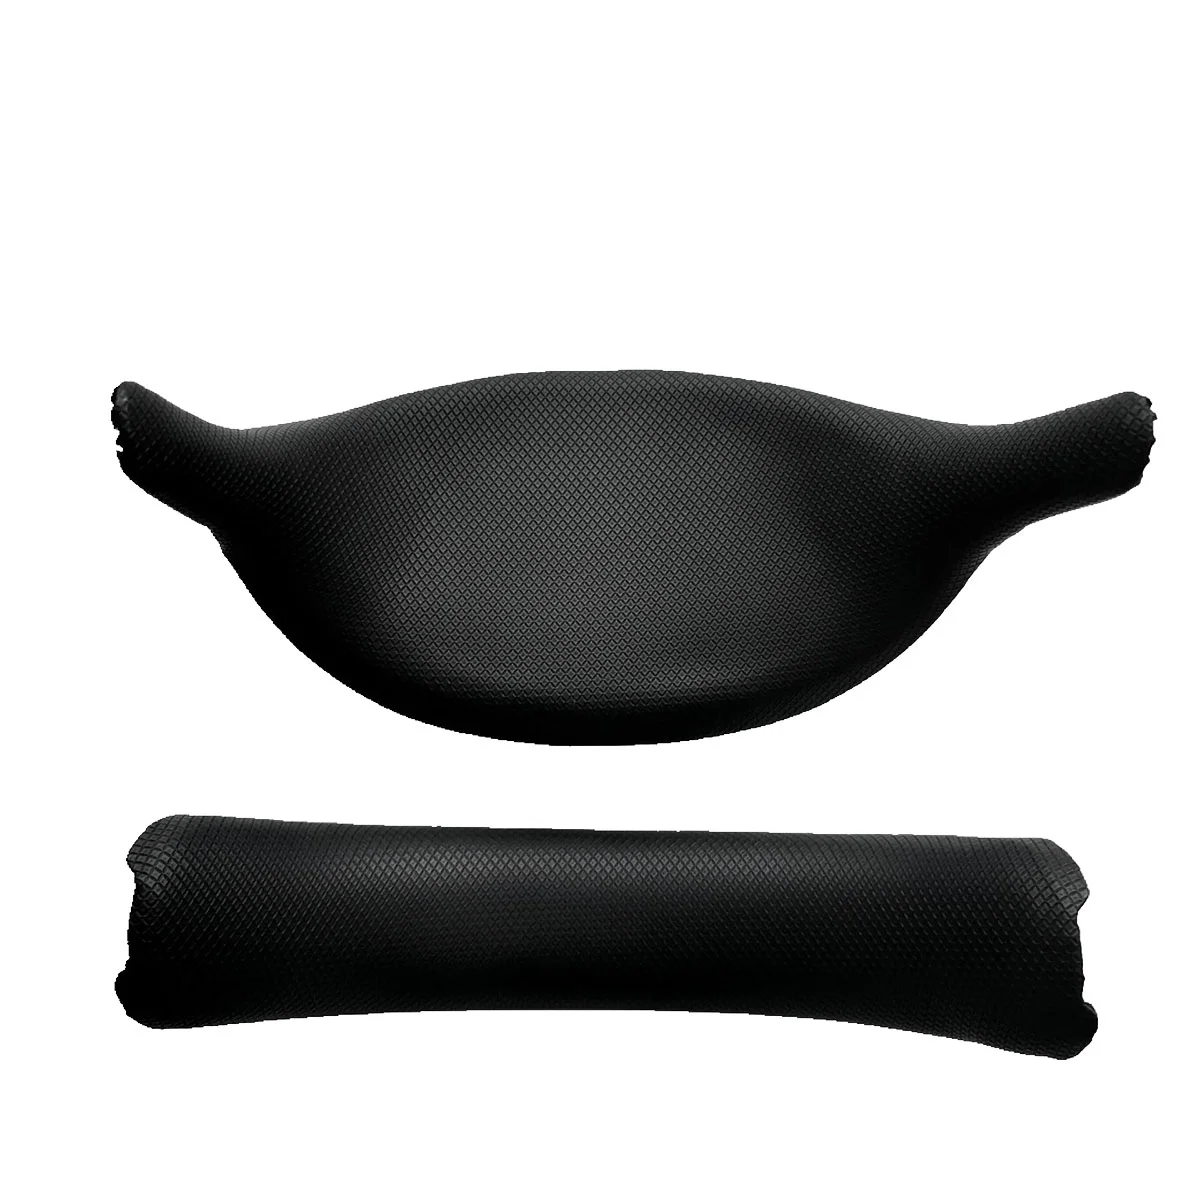 

Аксессуары для PSVR, аксессуары для шлема PSVR поколения VR, увеличенная искусственная Подушка, чехол для лица, кронштейн, накладка на лоб